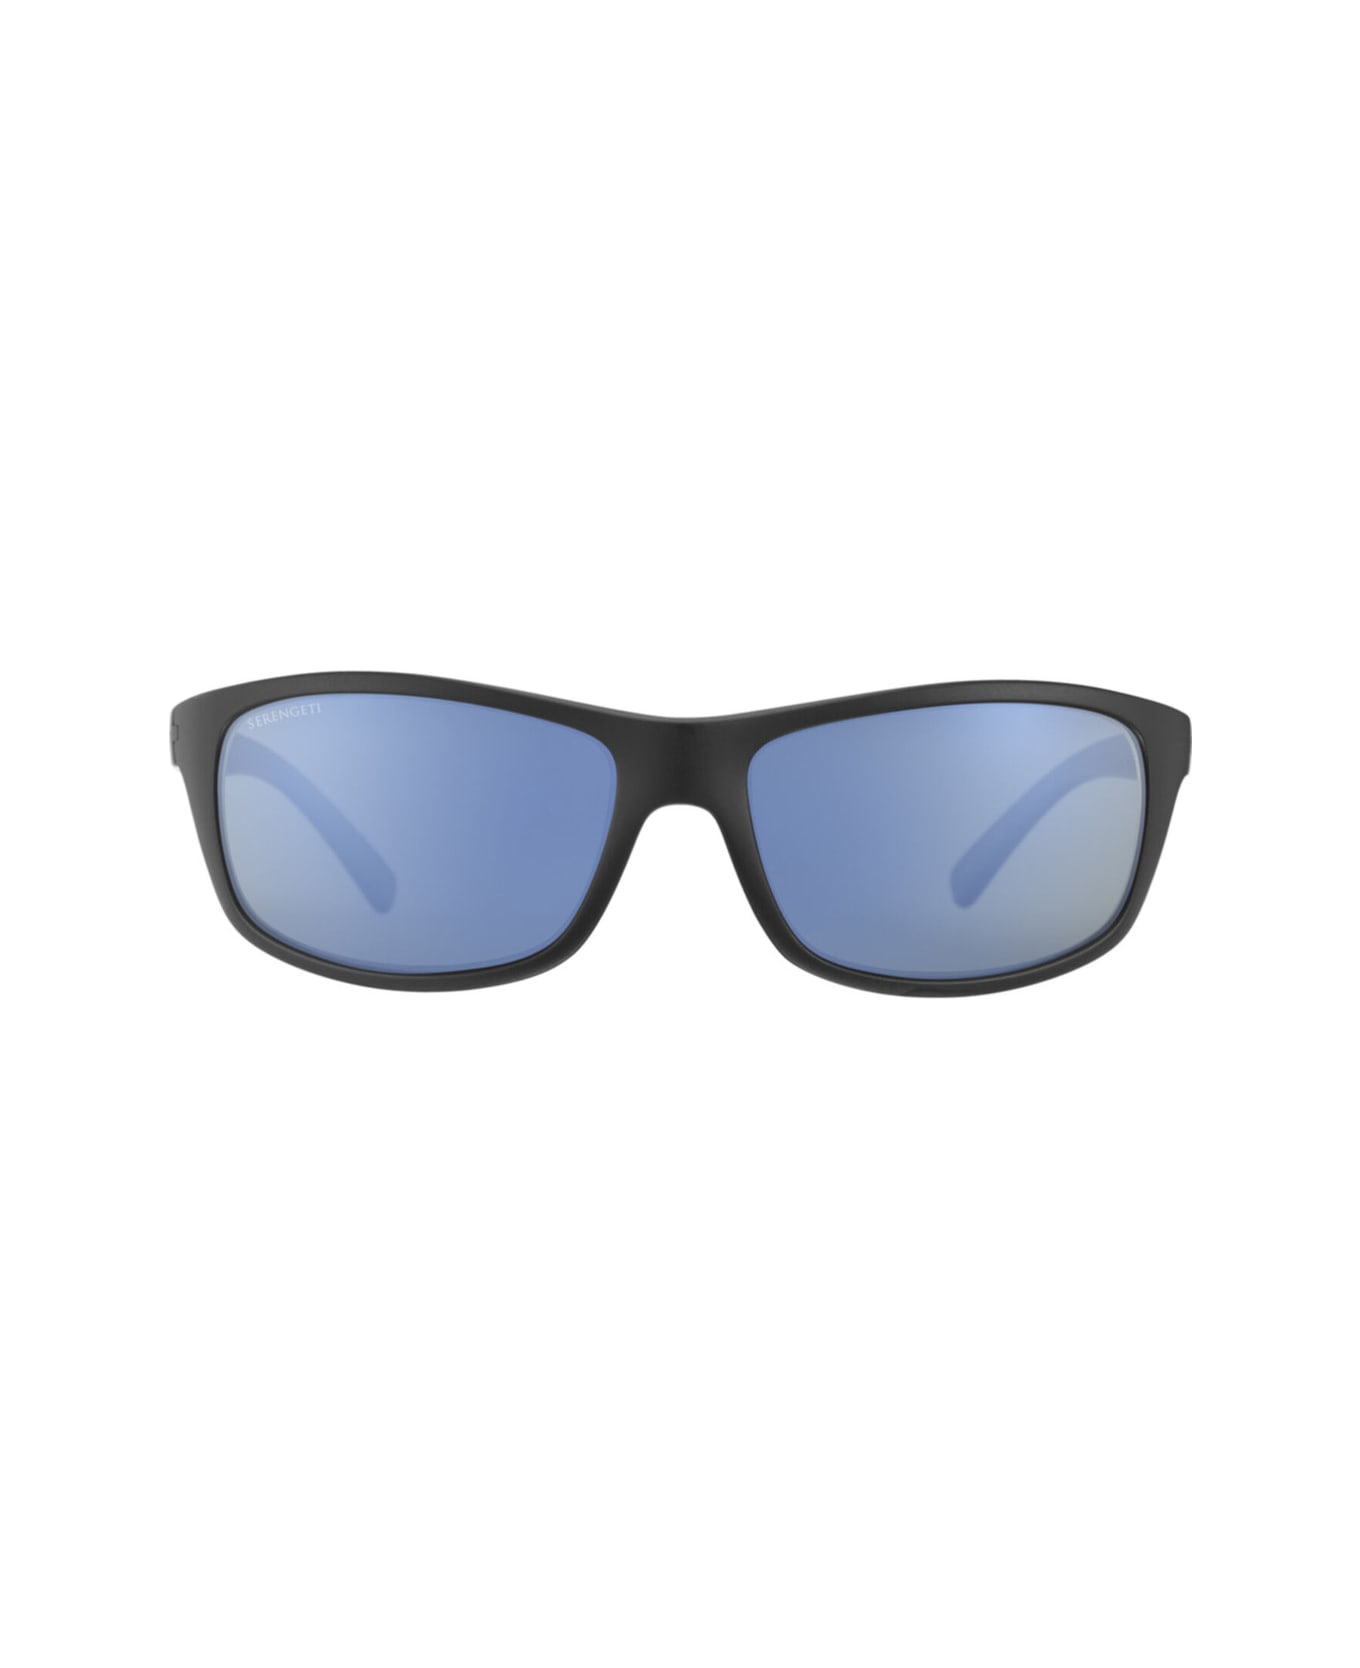 Serengeti Eyewear Bormio 9002 Sunglasses - Matte Black サングラス